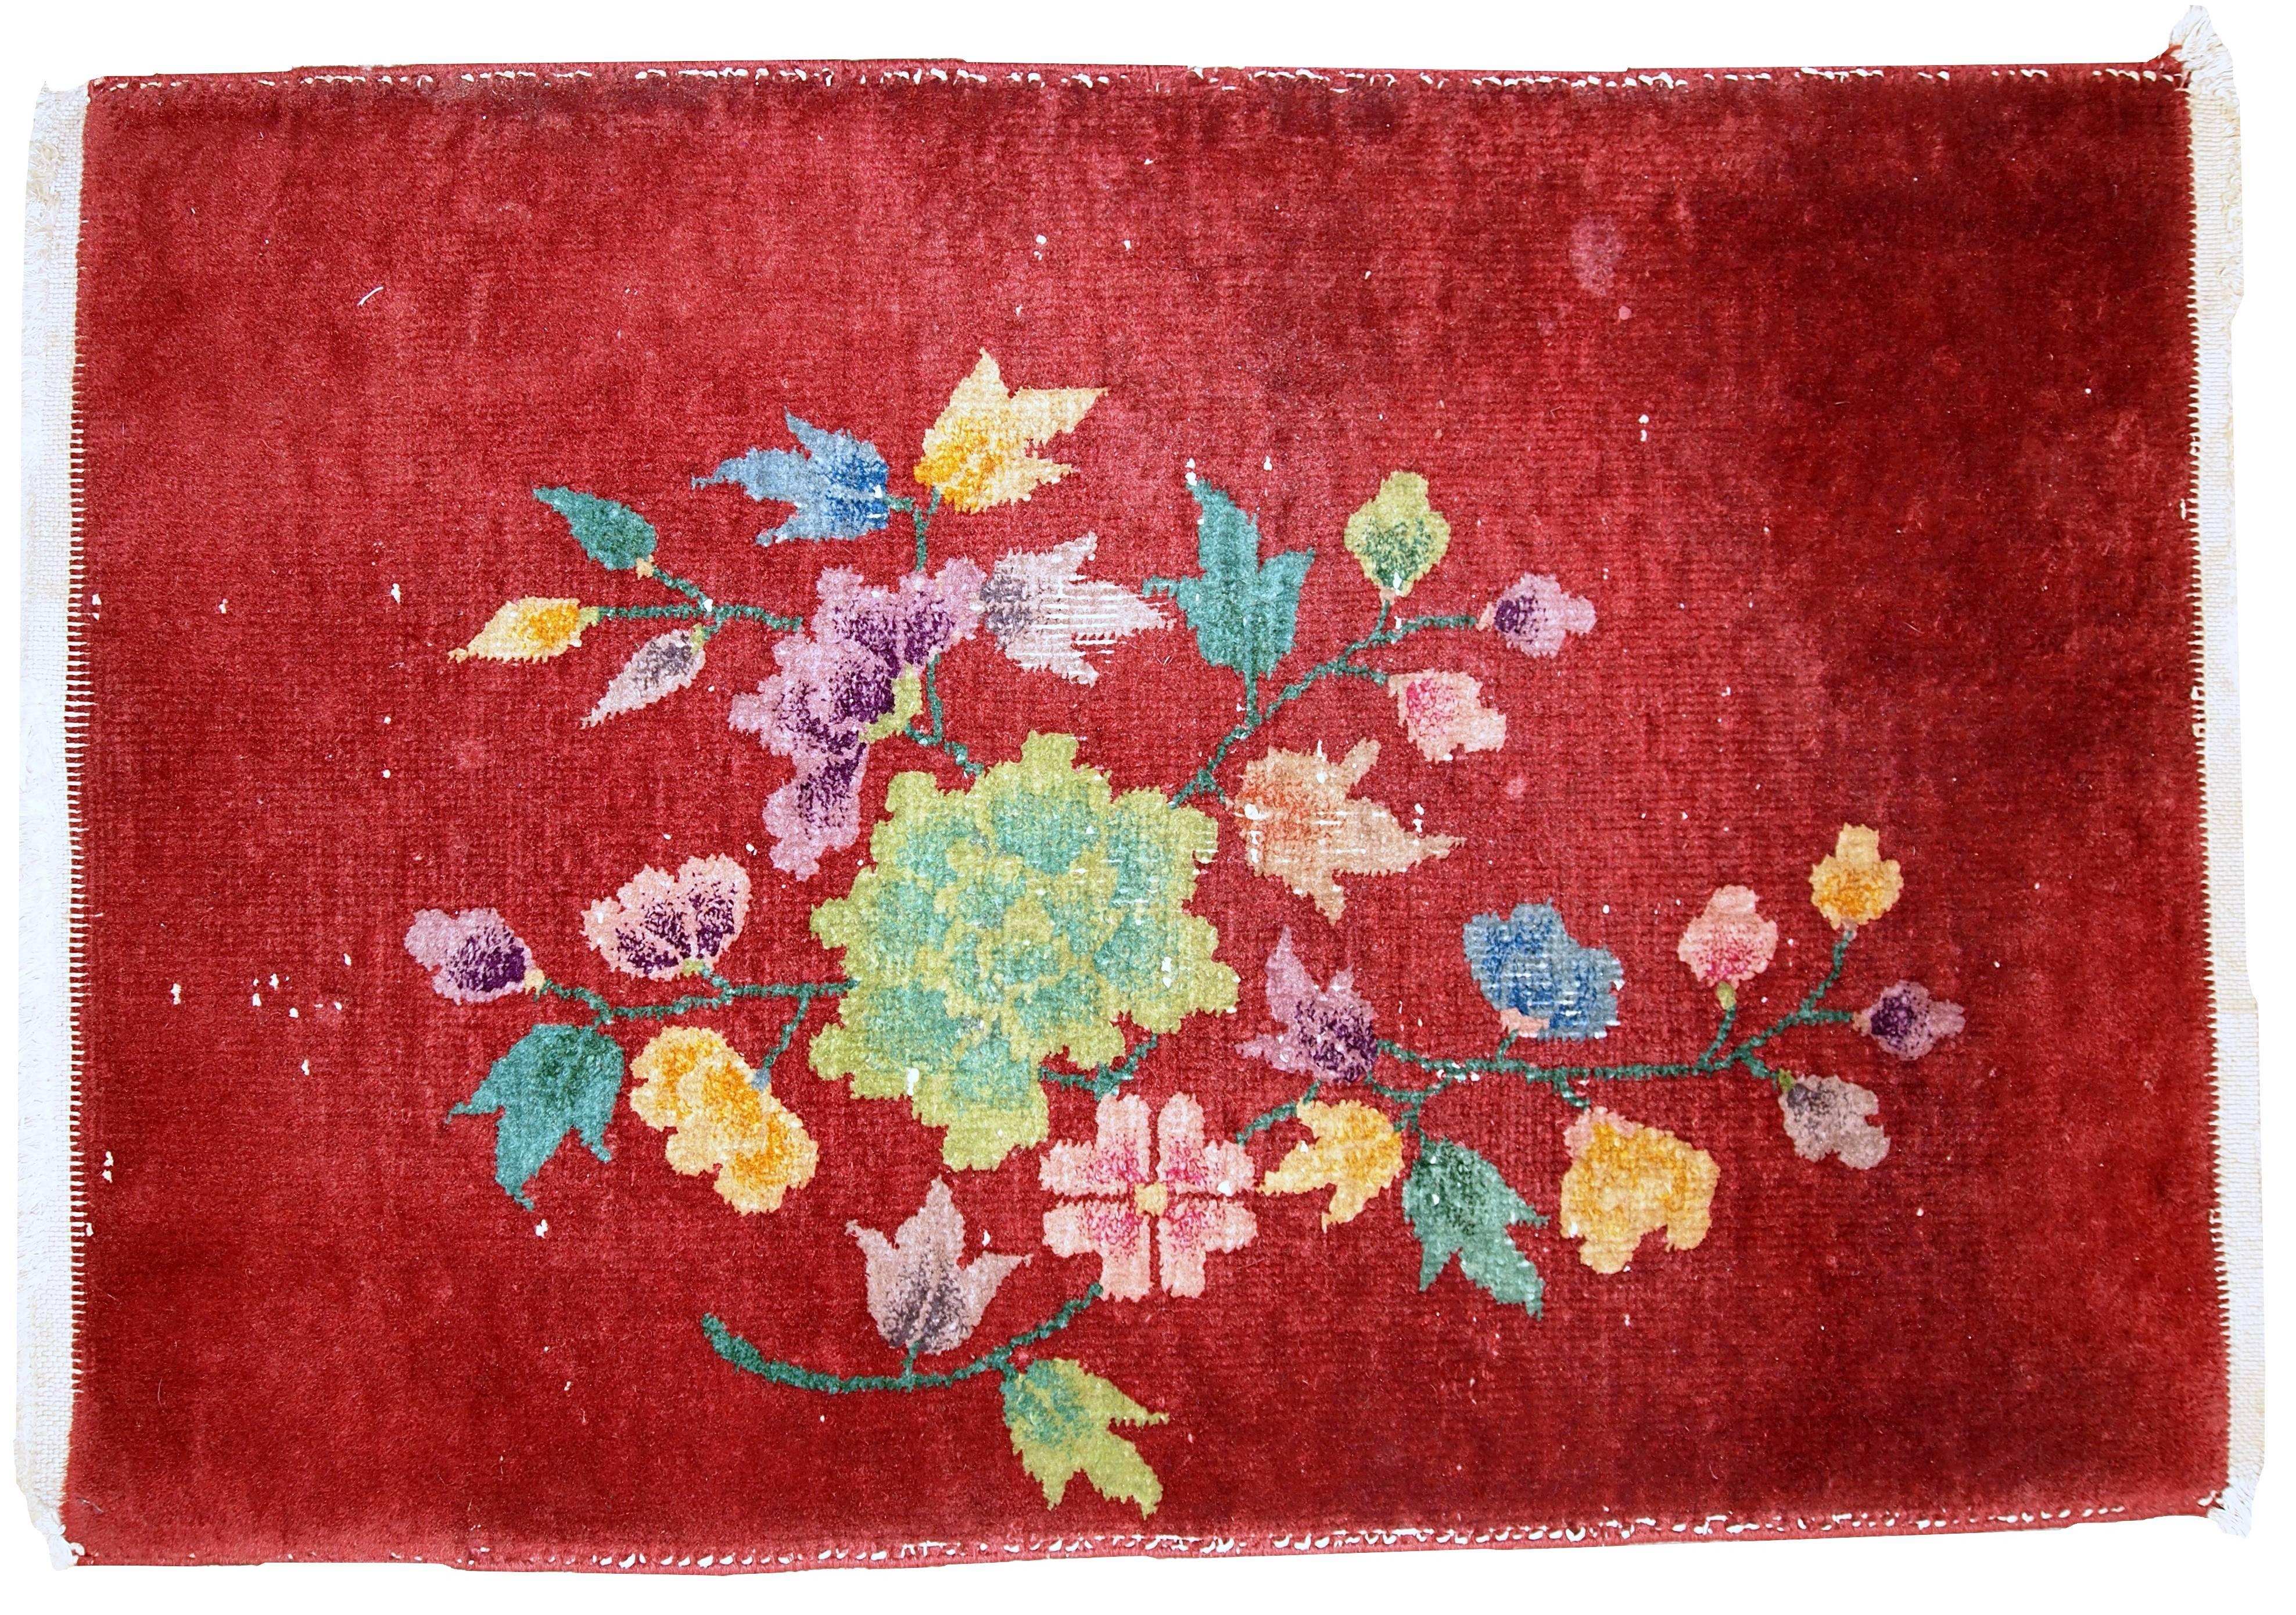 Antiker chinesischer Art-Deco-Teppich im Originalzustand. Der Teppich ist in leuchtendem Orange gehalten. Dekoratives Blumenmuster in verschiedenen Gelb-, Grün- und Lila-Tönen. Der Zustand ist original, hat etwas niedrigen Flor.